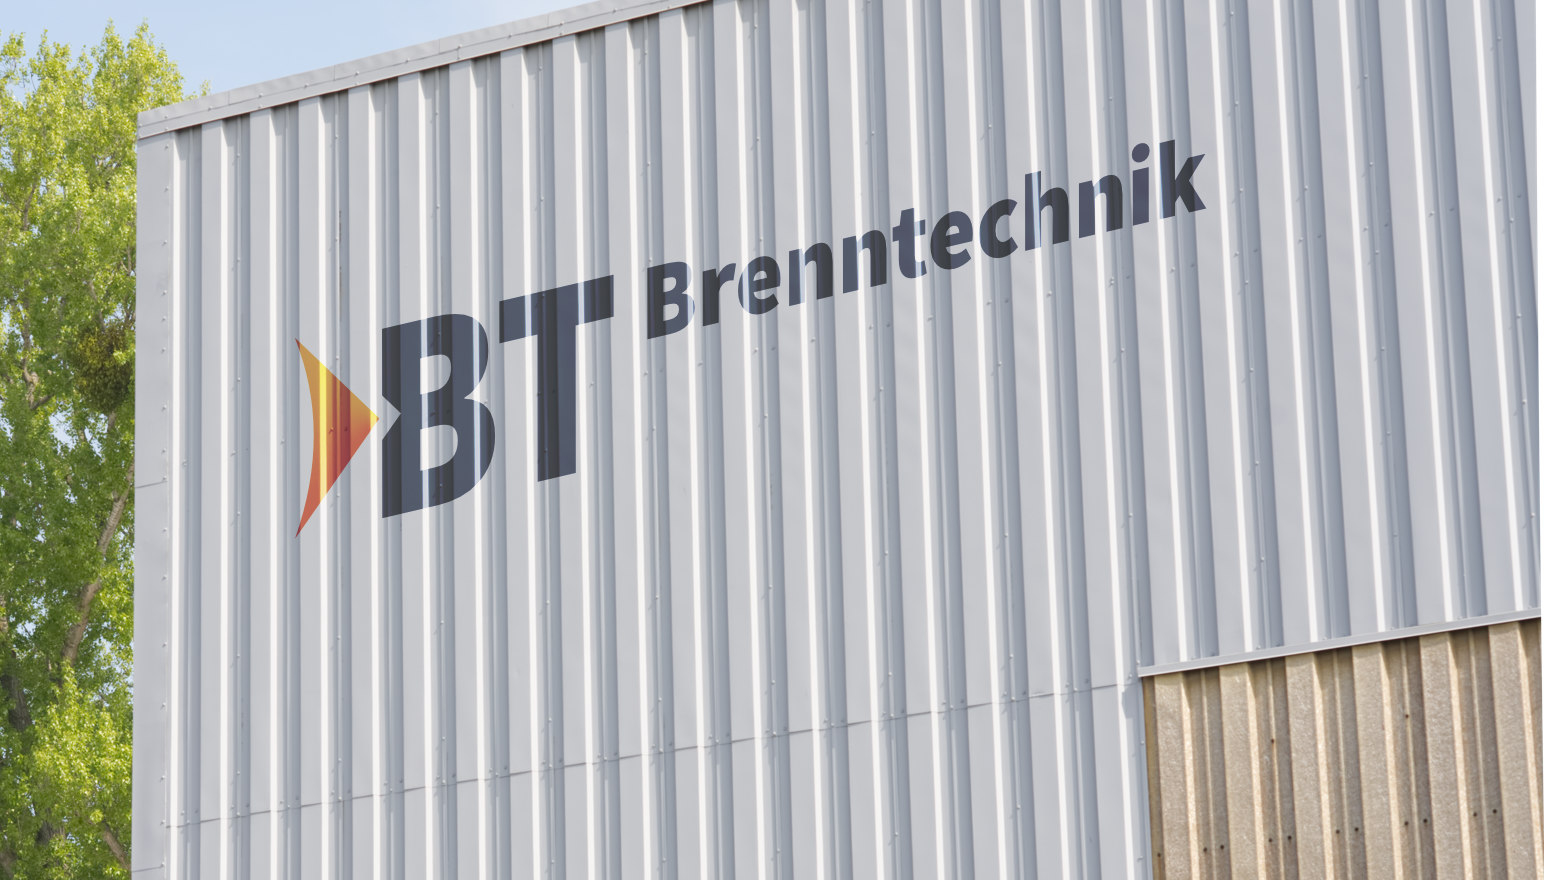 BT Brenntechnik | Grobblechzuschnitte aus Hannover